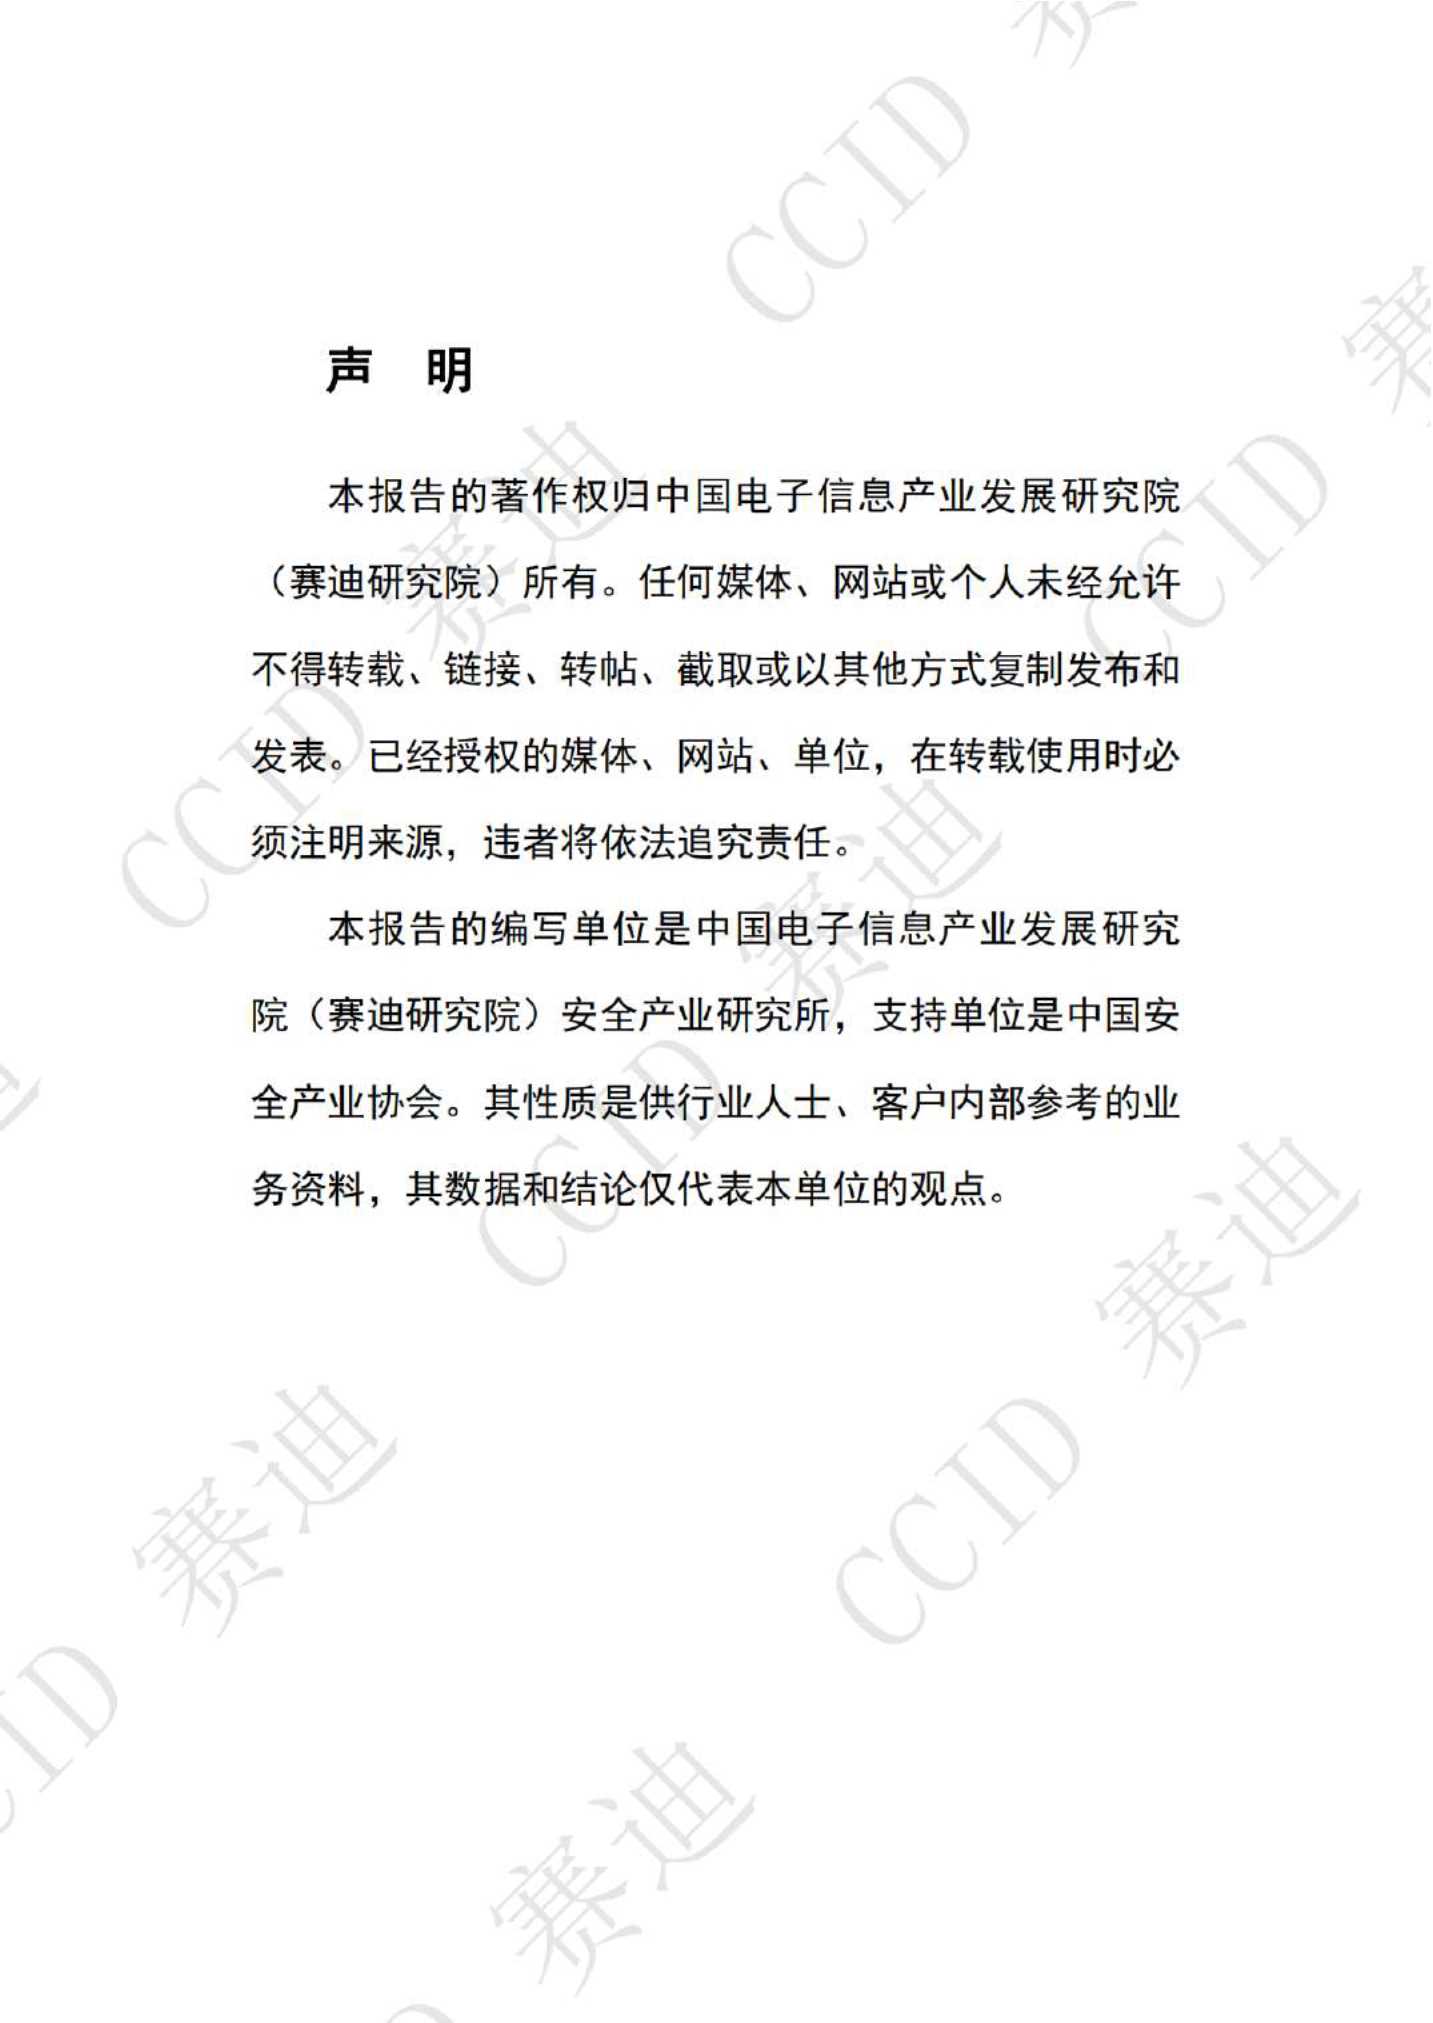 2021年度中国安全应急产业白皮书（-版）-2021.12-56页